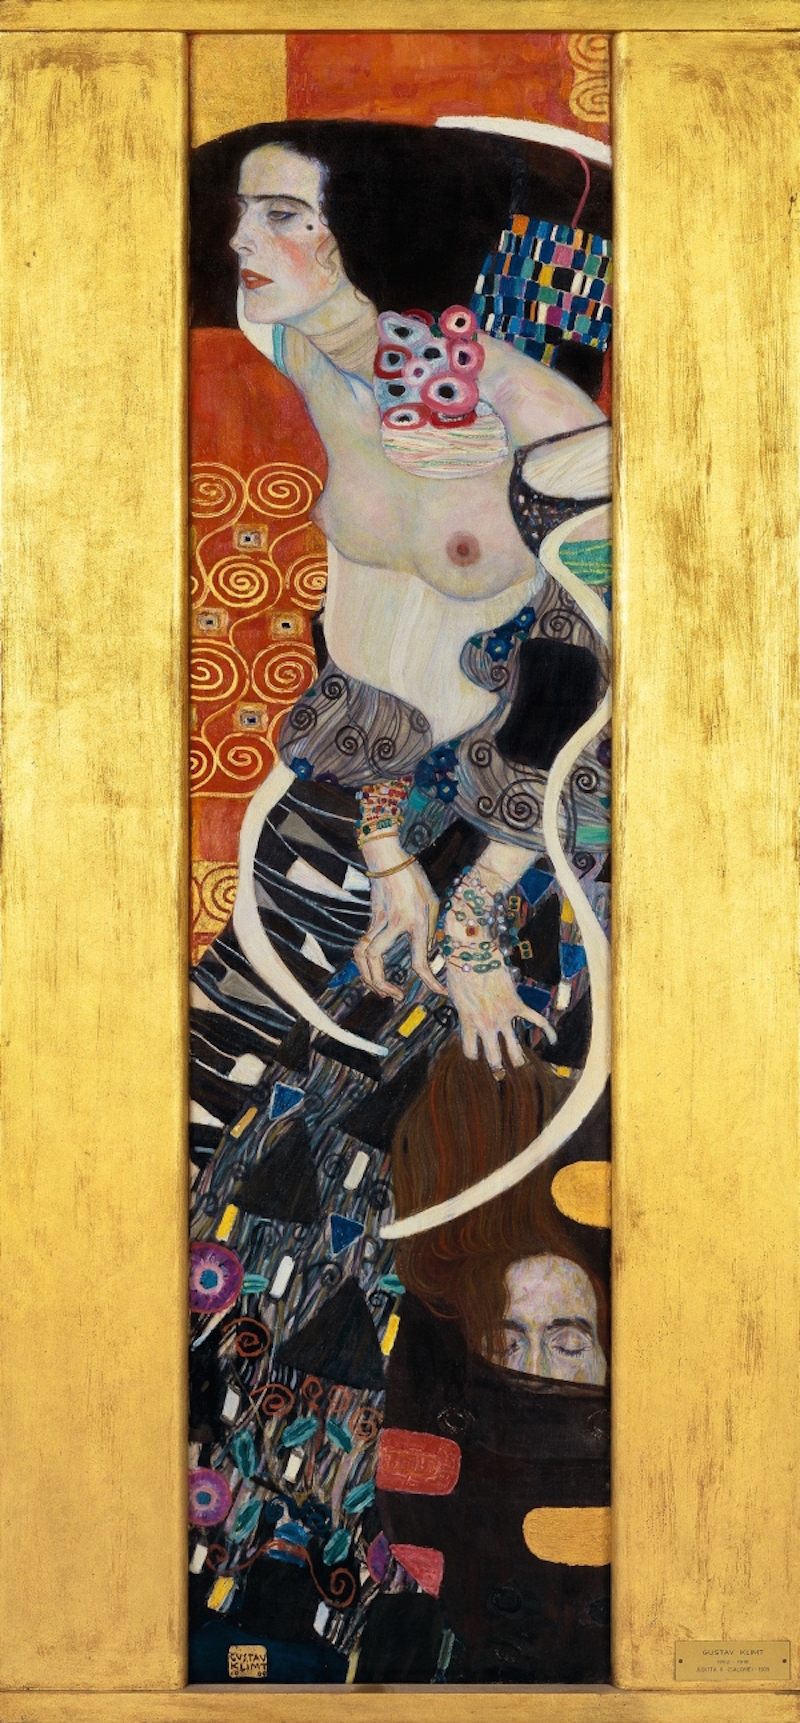 朱迪斯II—莎乐美 by 古斯塔夫· 克林姆特画 - 1909 - 178 x 46 cm 佩萨罗宫Ca' Pesaro - 国际现代艺术画廊